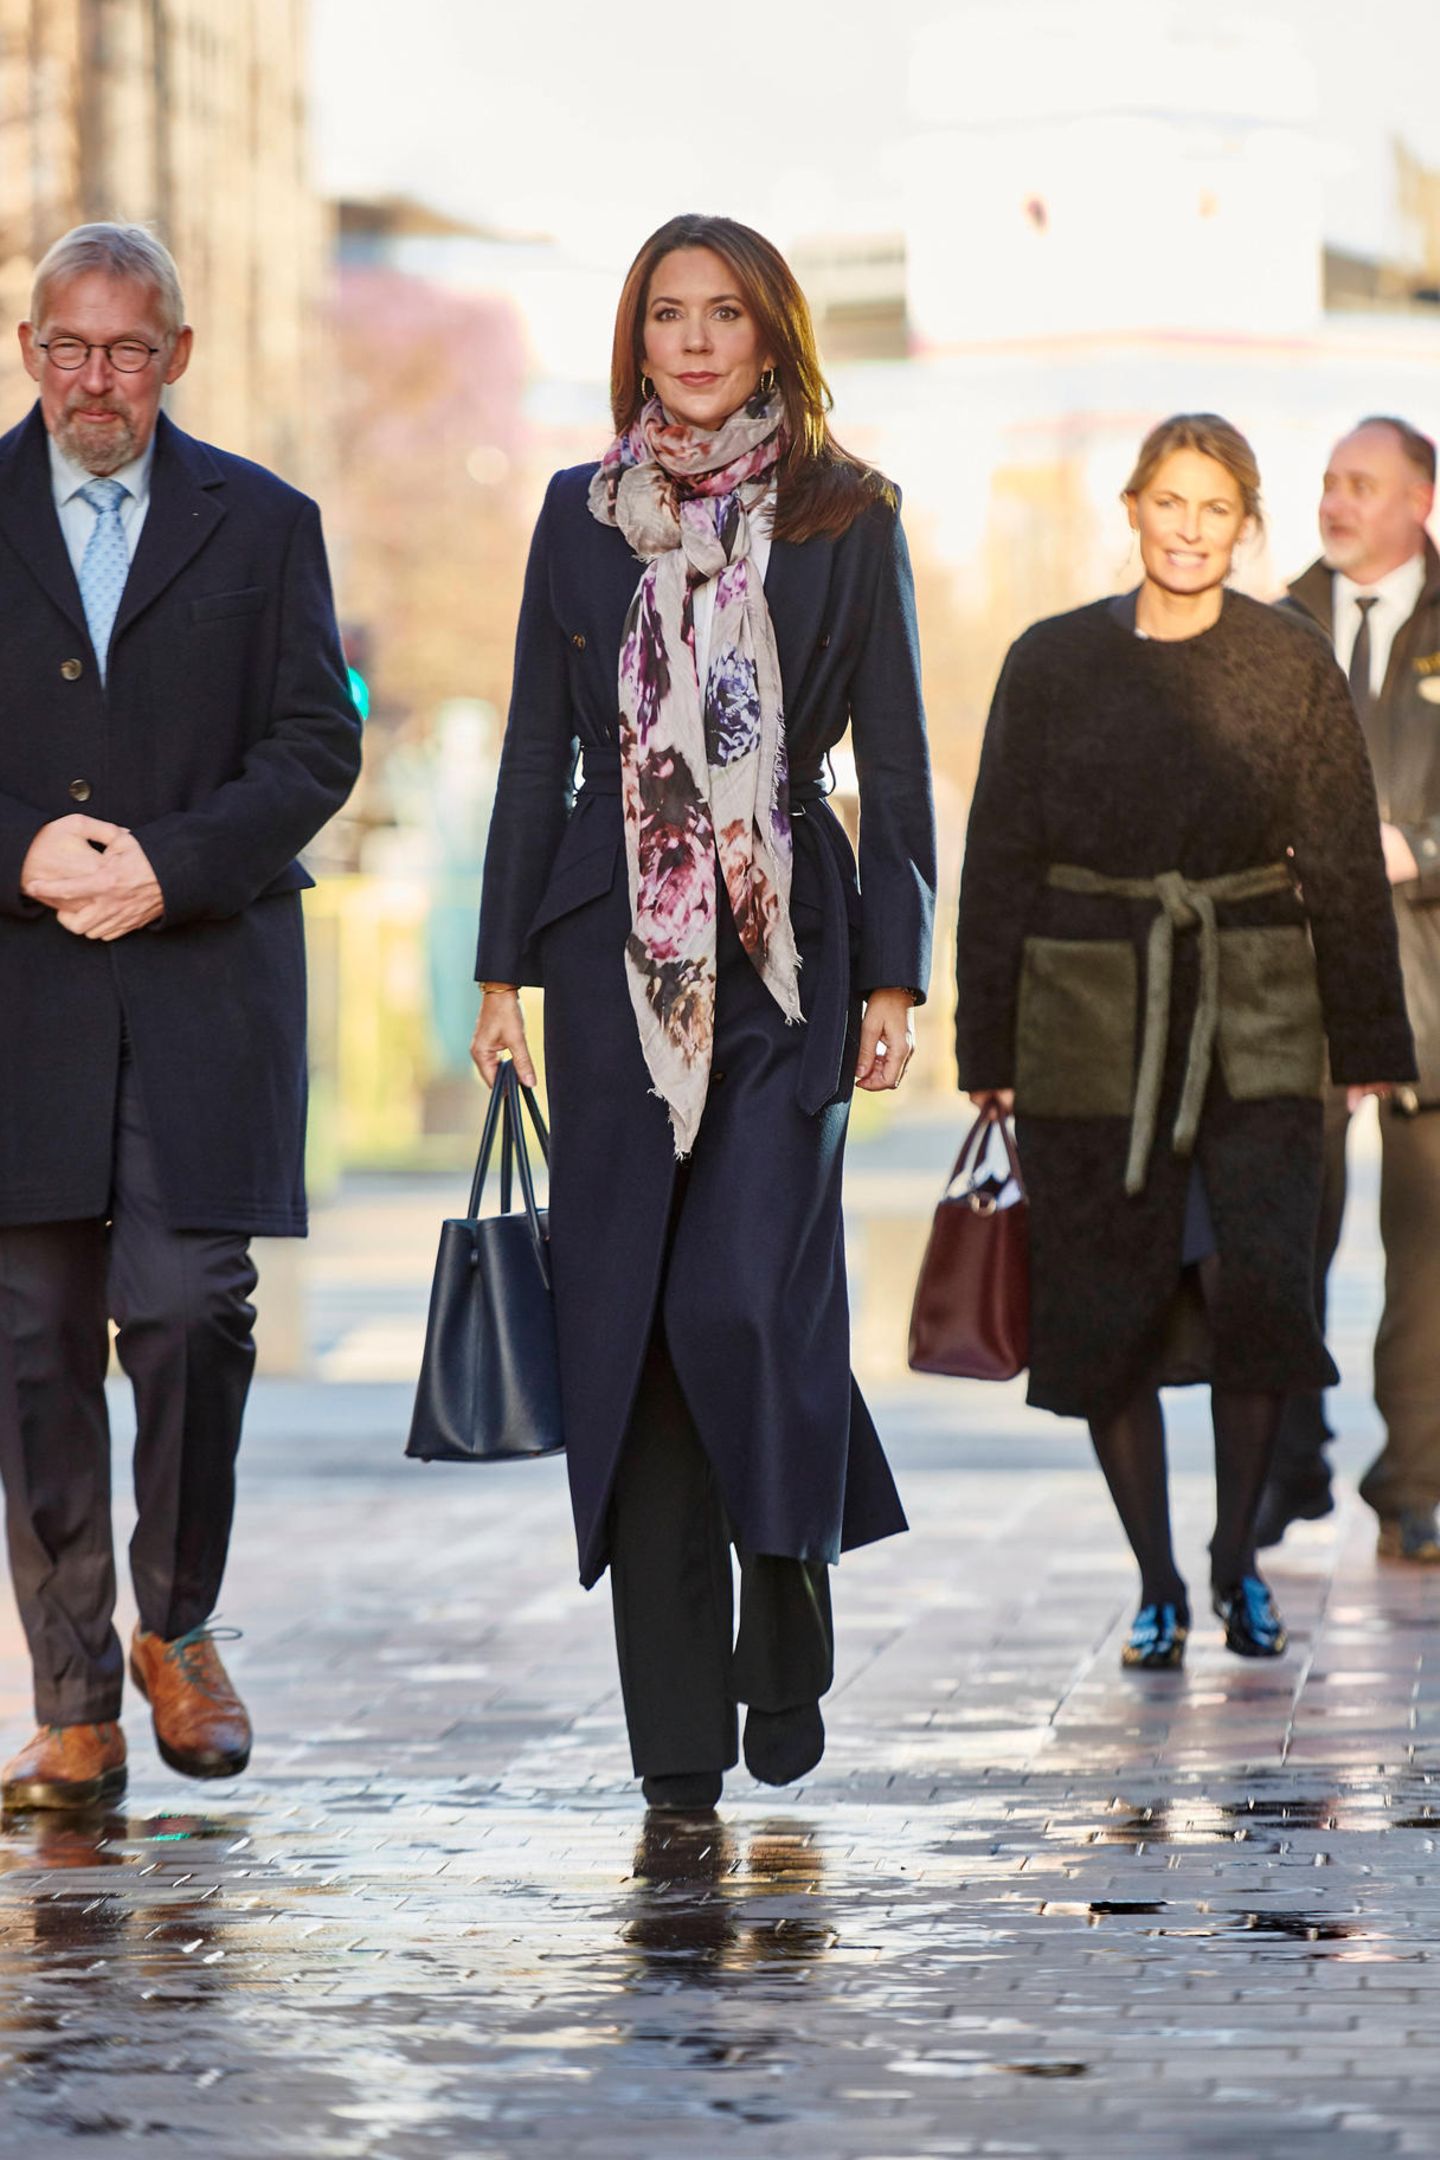 Prinzessin Mary ist anlässlich des Weltkindertags in Kopenhagen unterwegs. Sie trägt einen schicken dunklen Mantel von Fonnesbech, einem nachhaltigen dänischen Label, Stiefeletten des spanischen Labels Pura Lopez und eine dunkle Leder-Handtasche von Prada. Als farbigen Eyecatcher wählt sie ein gemustertes Tuch. 